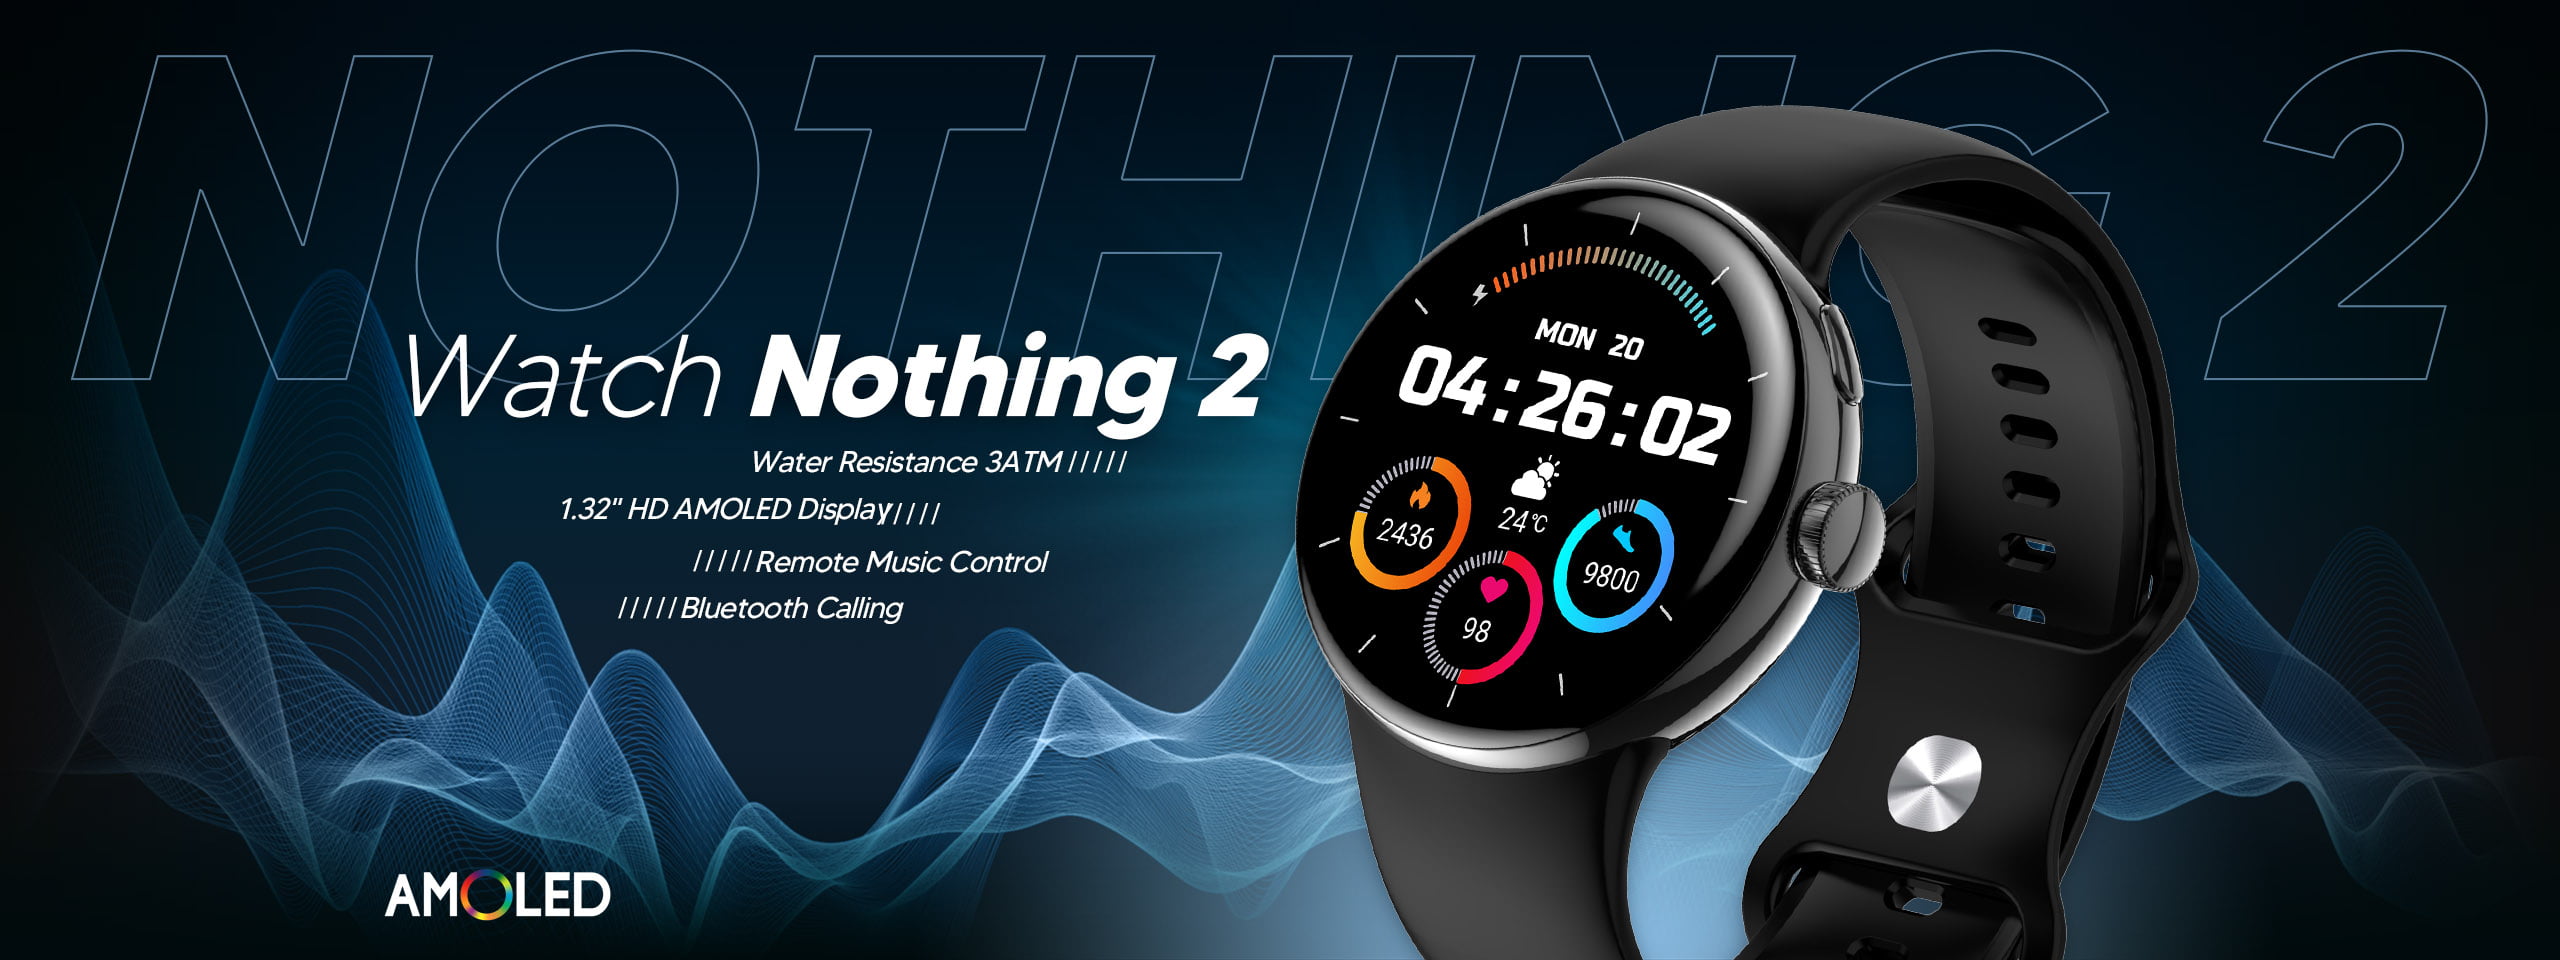 XINJI Nothing 2 Smart Watch